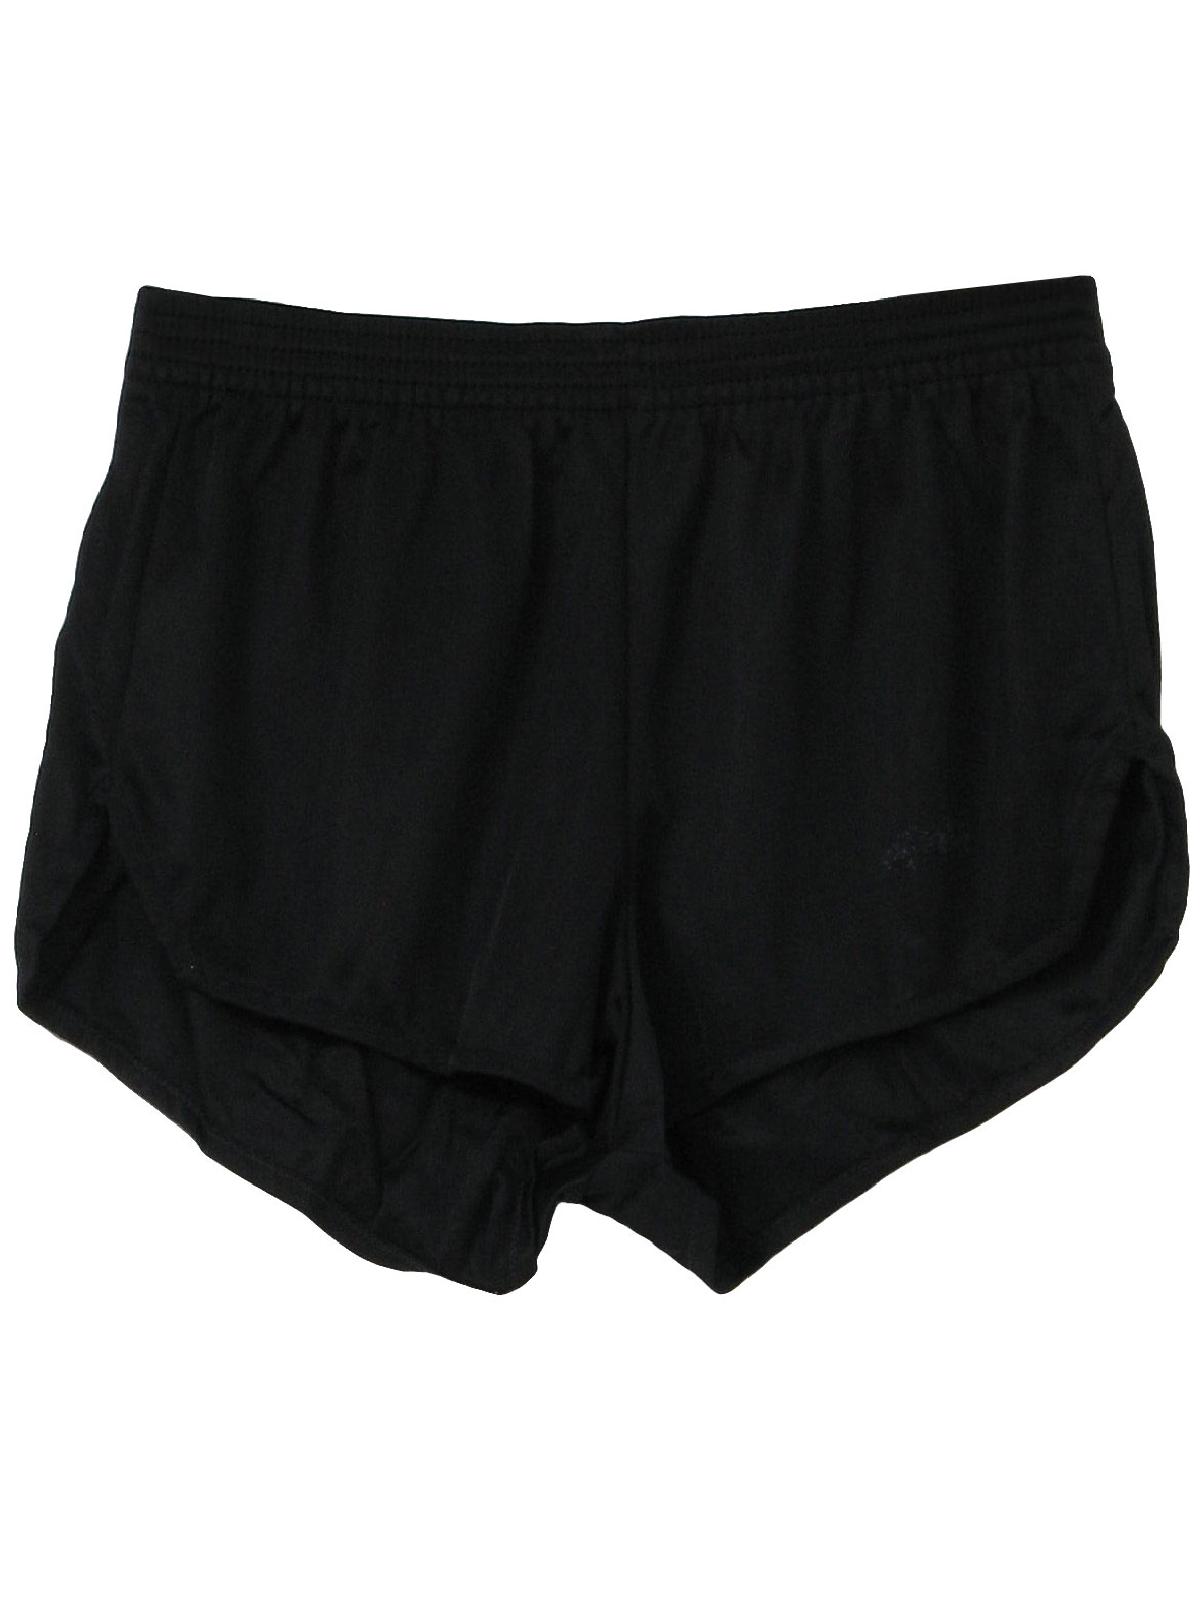 Retro 90's Shorts: 90s -Dolfin- Mens black nylon high elastic waist ...